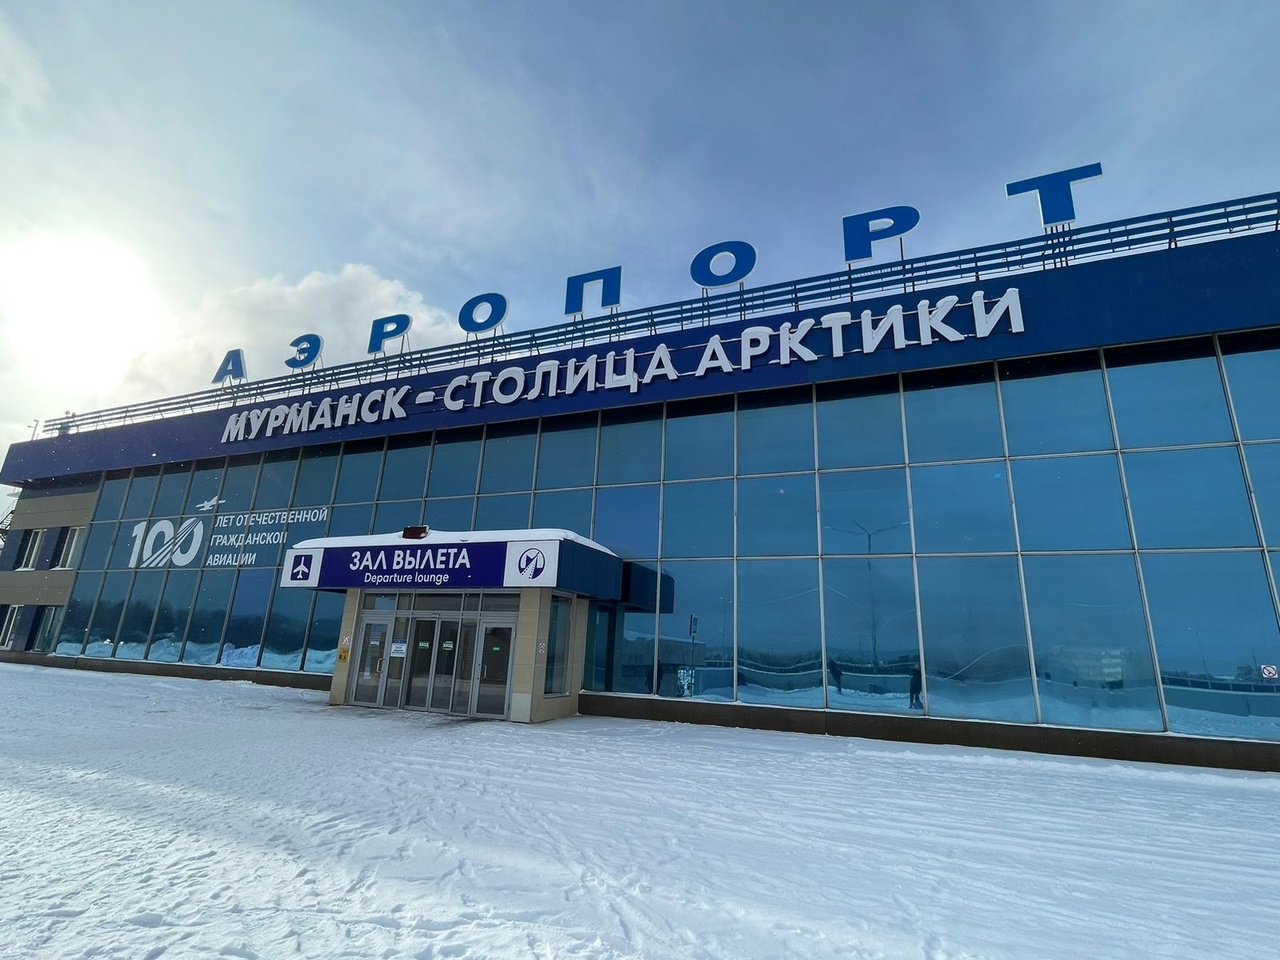 Будущее опорных населенных пунктов в Российской Арктике обсудили эксперты ПОРА